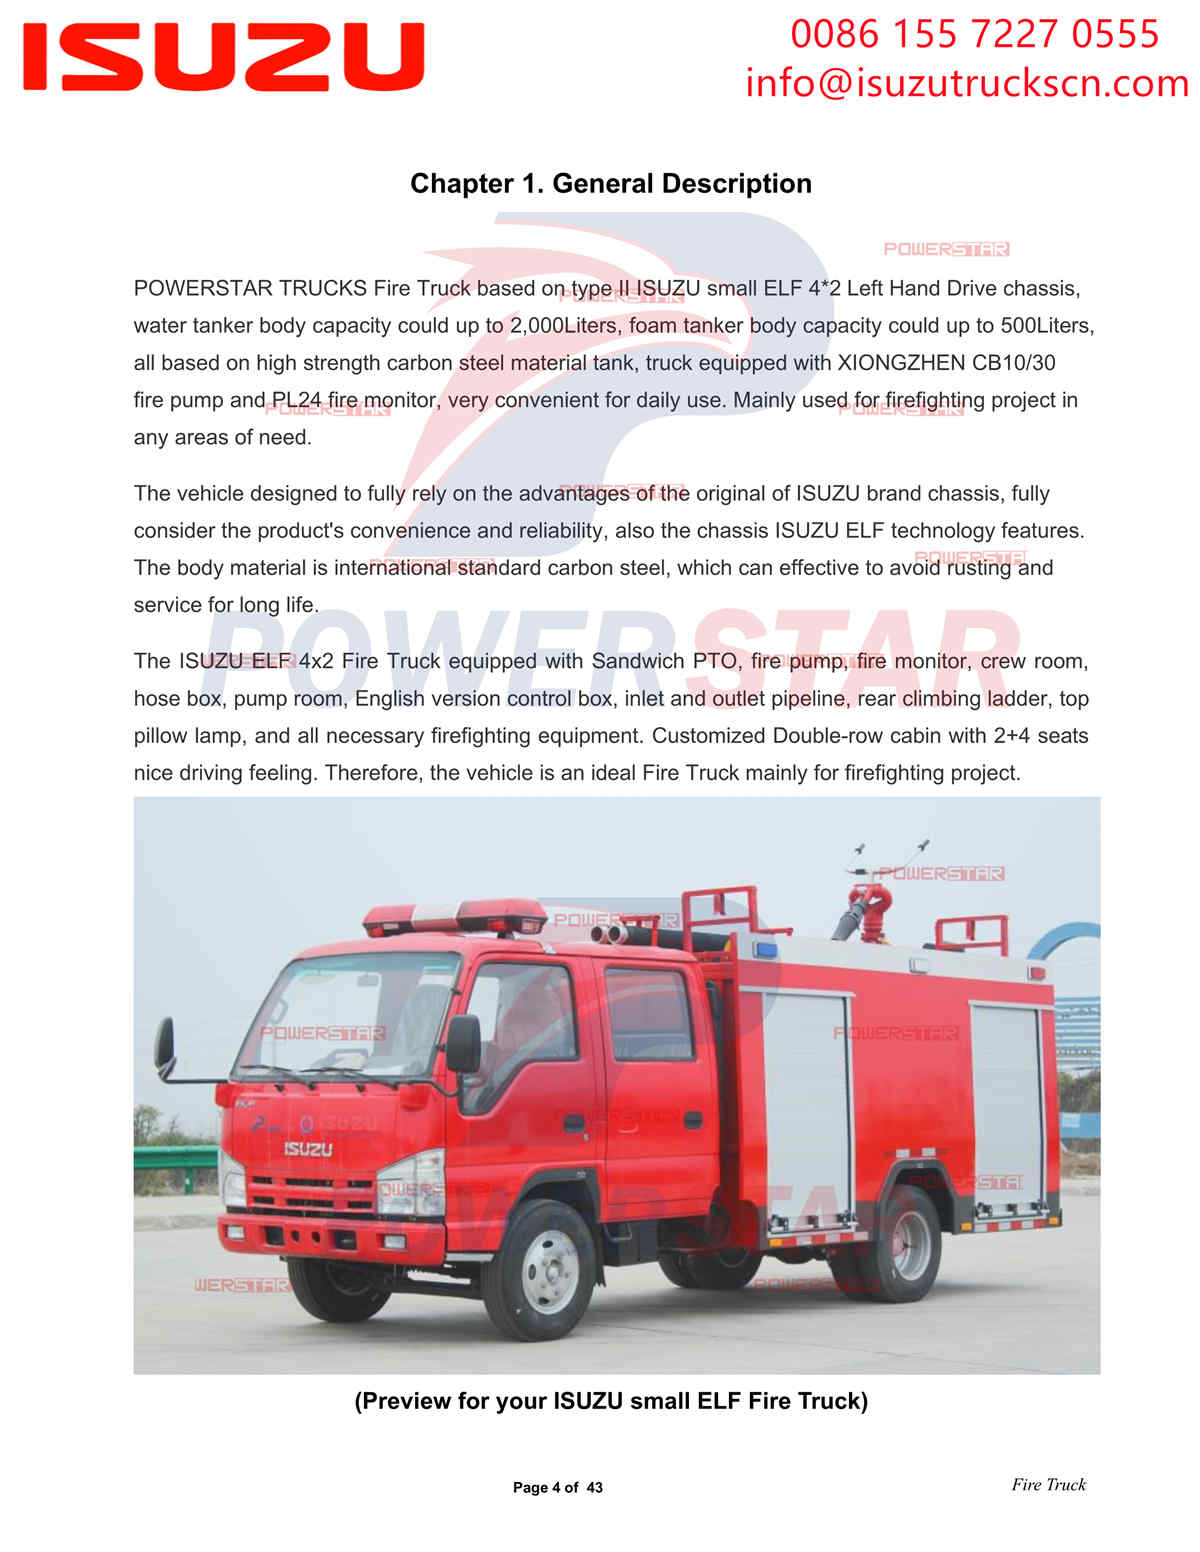 تصدير POWERSTAR ISUZU 100P Water & Foam Fire Truck ألبانيا